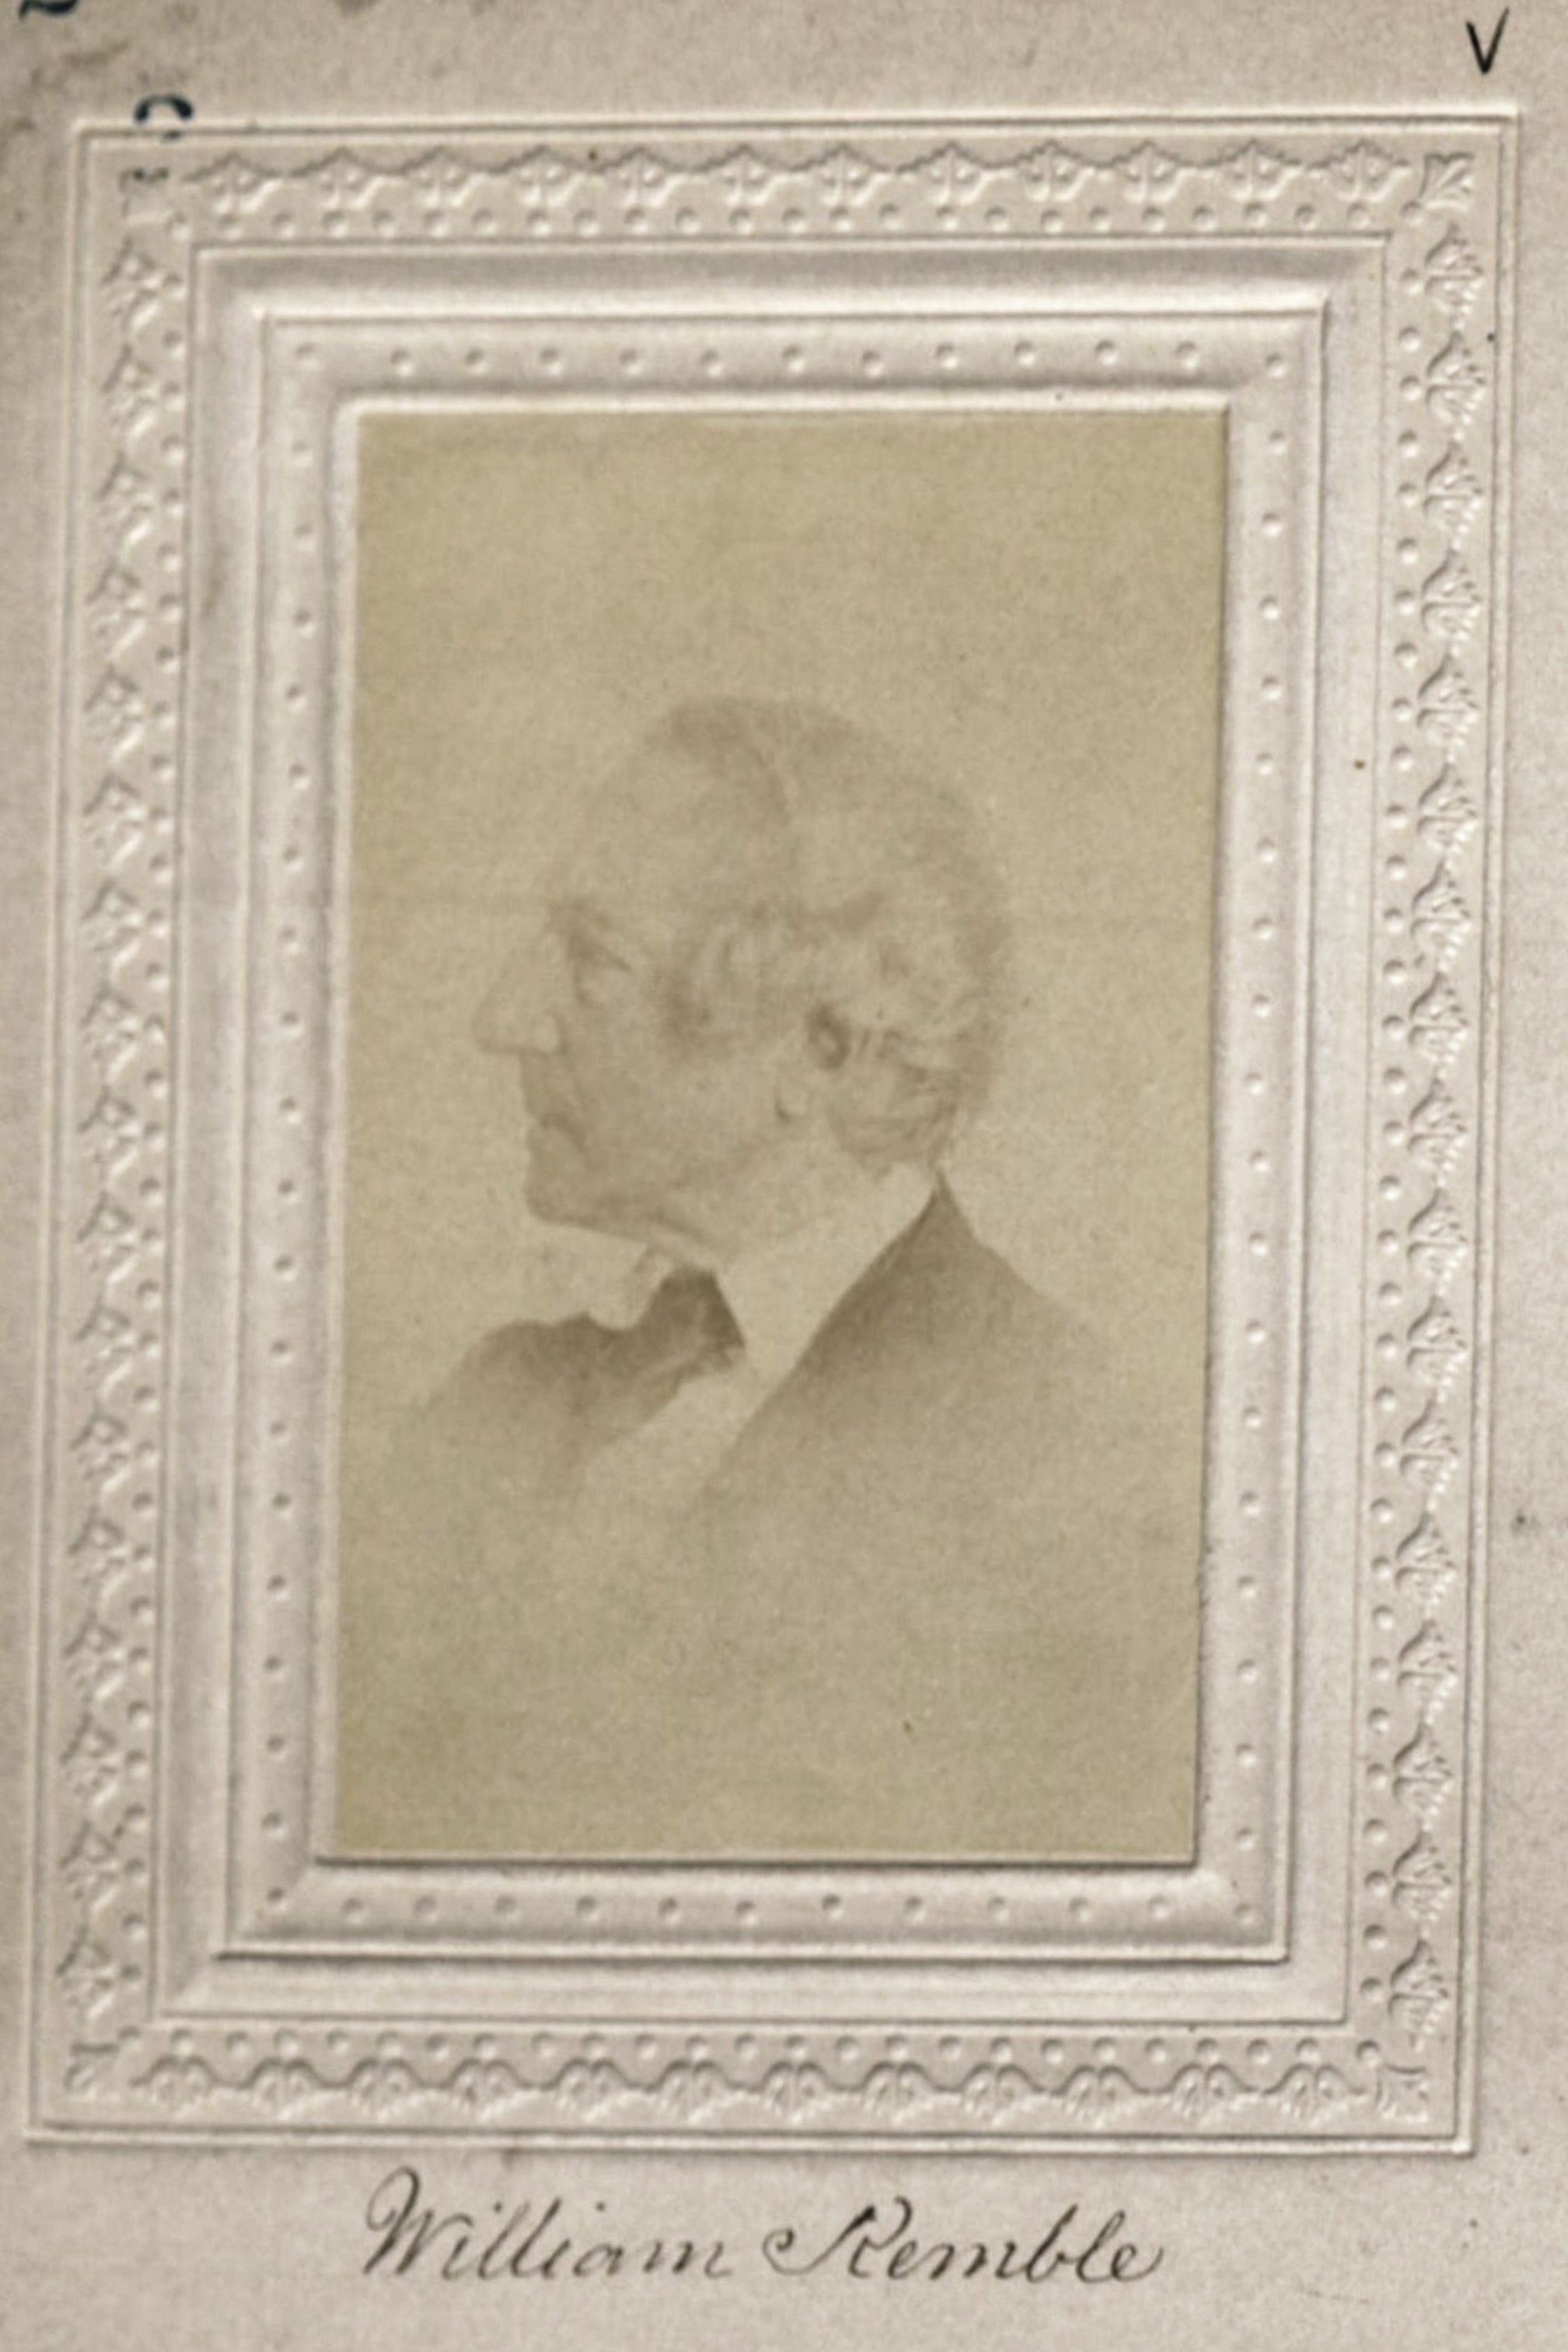 Member portrait of William Kemble